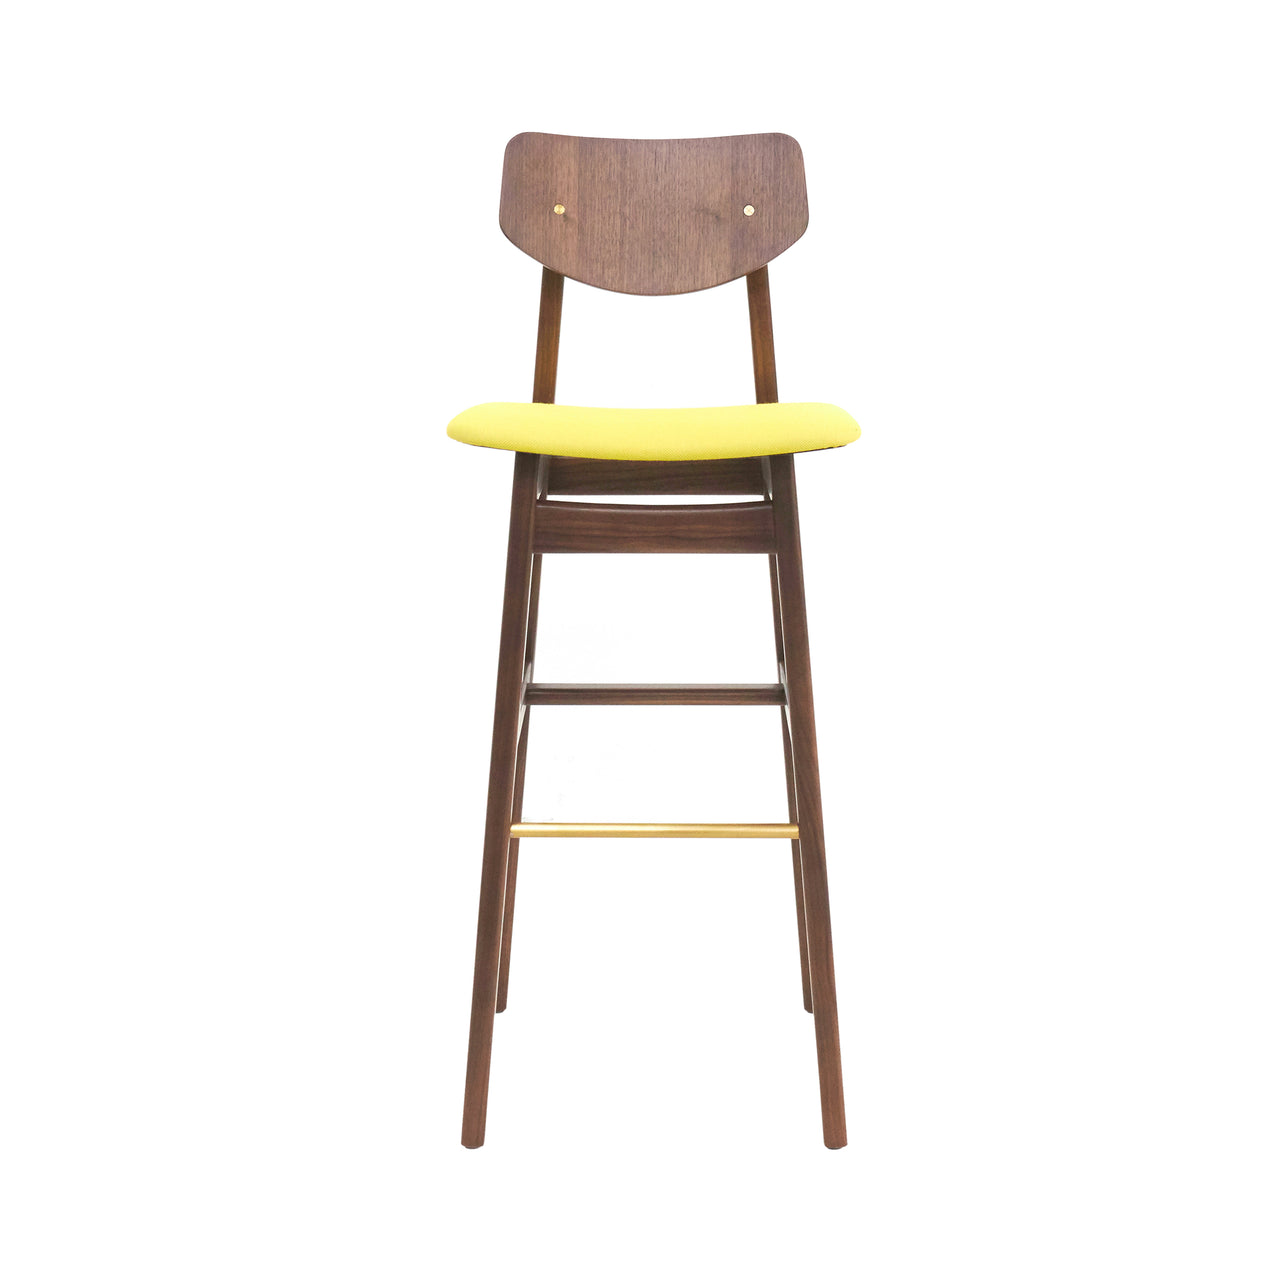 Risom C375 Chair: Natural Walnut